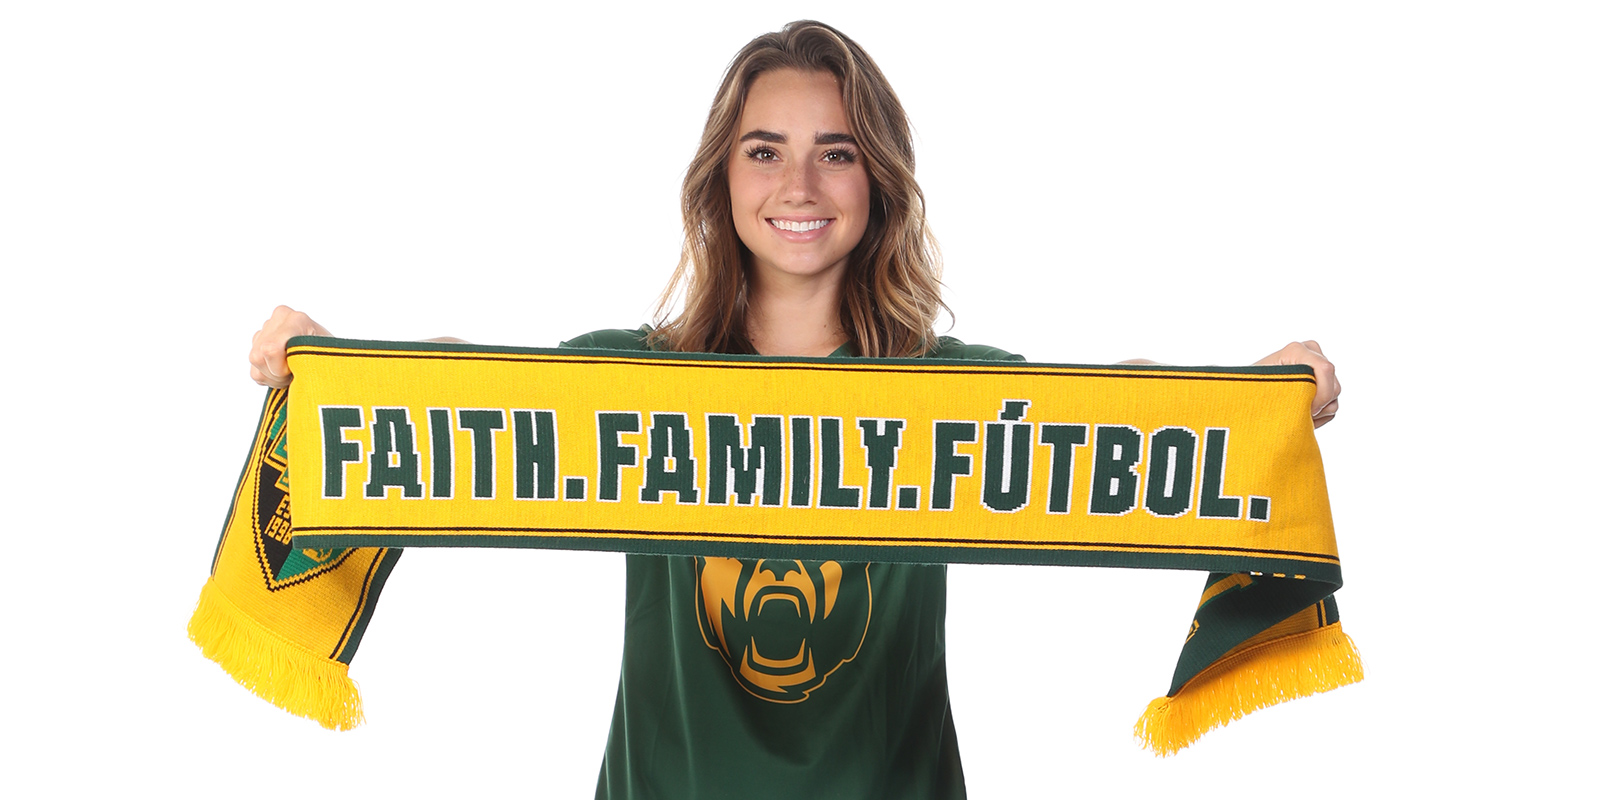 Baylor soccer player Kylie Ross holding a "Faith, Family, Futbol" scarf